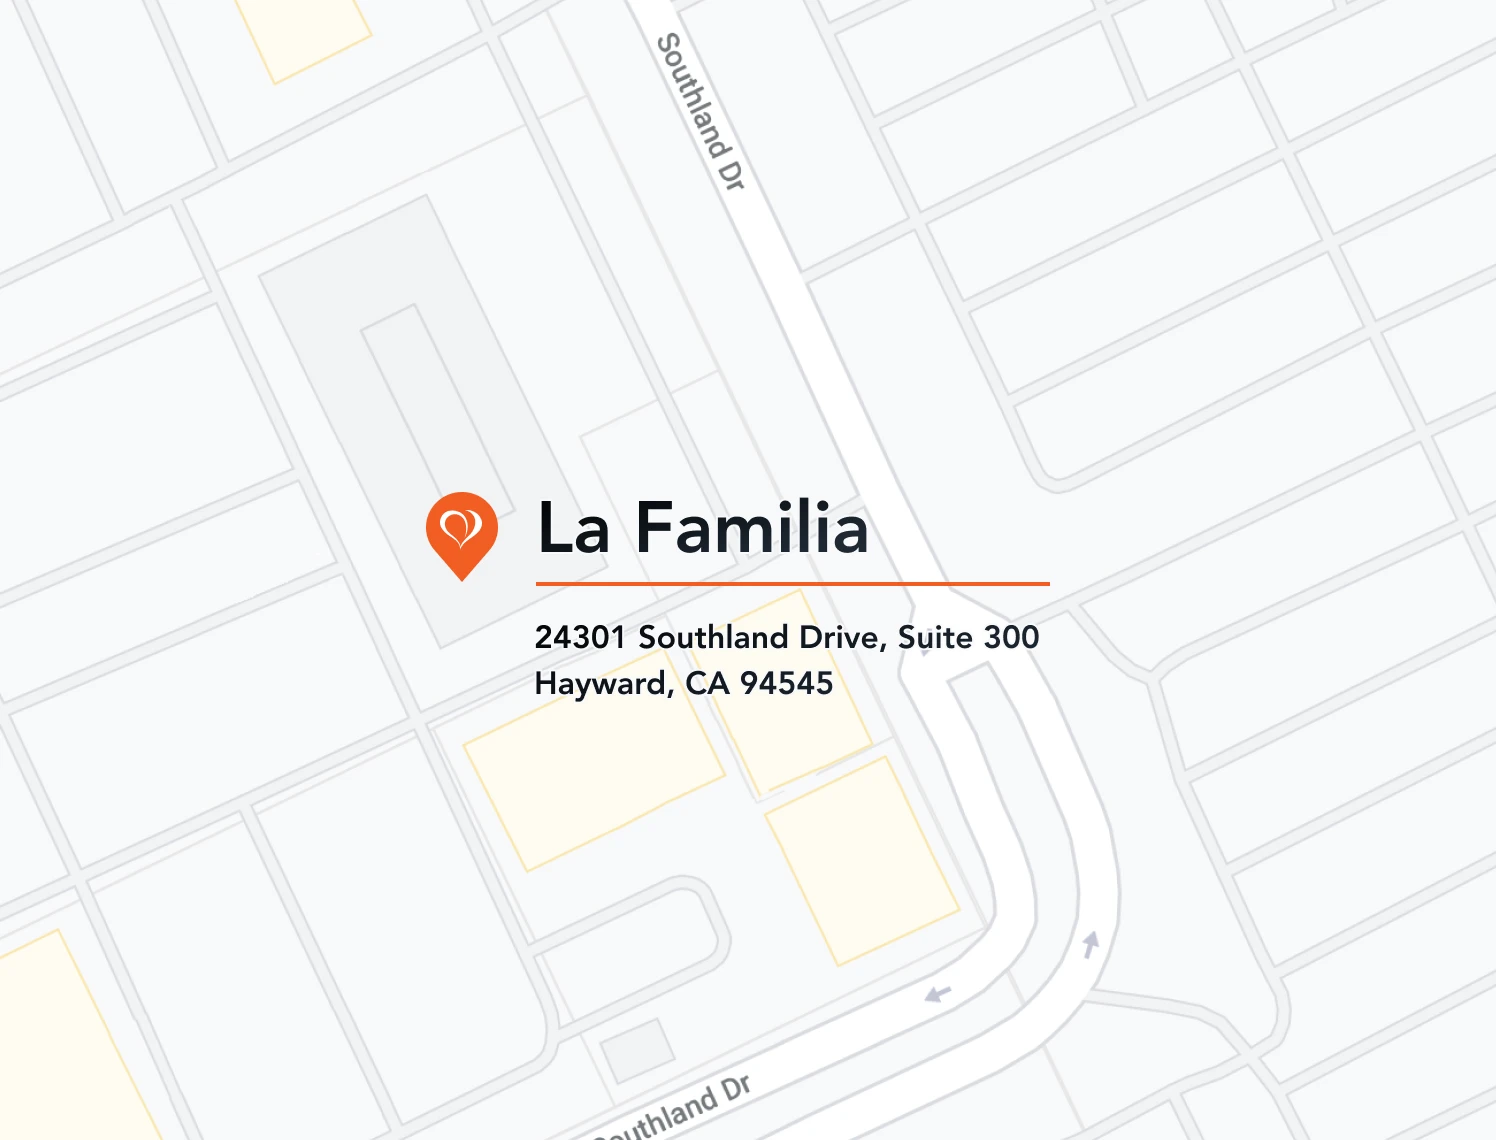 La Familia contact map mobile